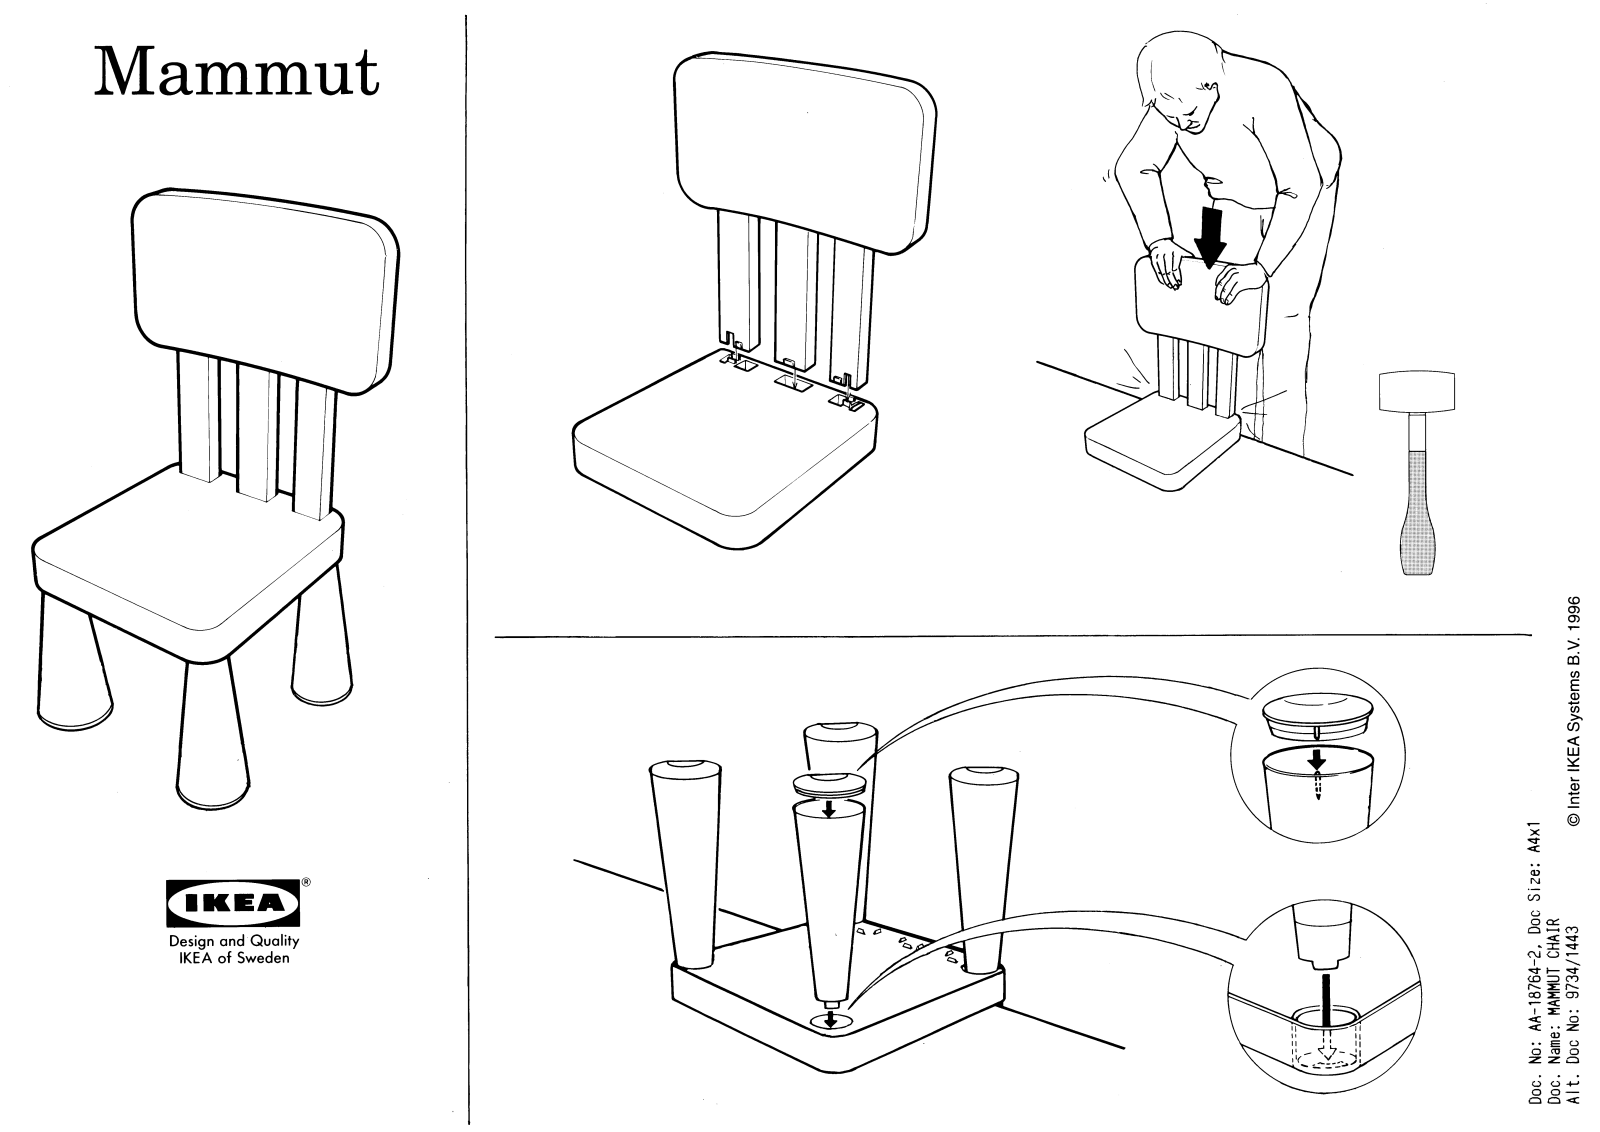 IKEA MAMMUT CHILD CHAIR Assembly Instruction